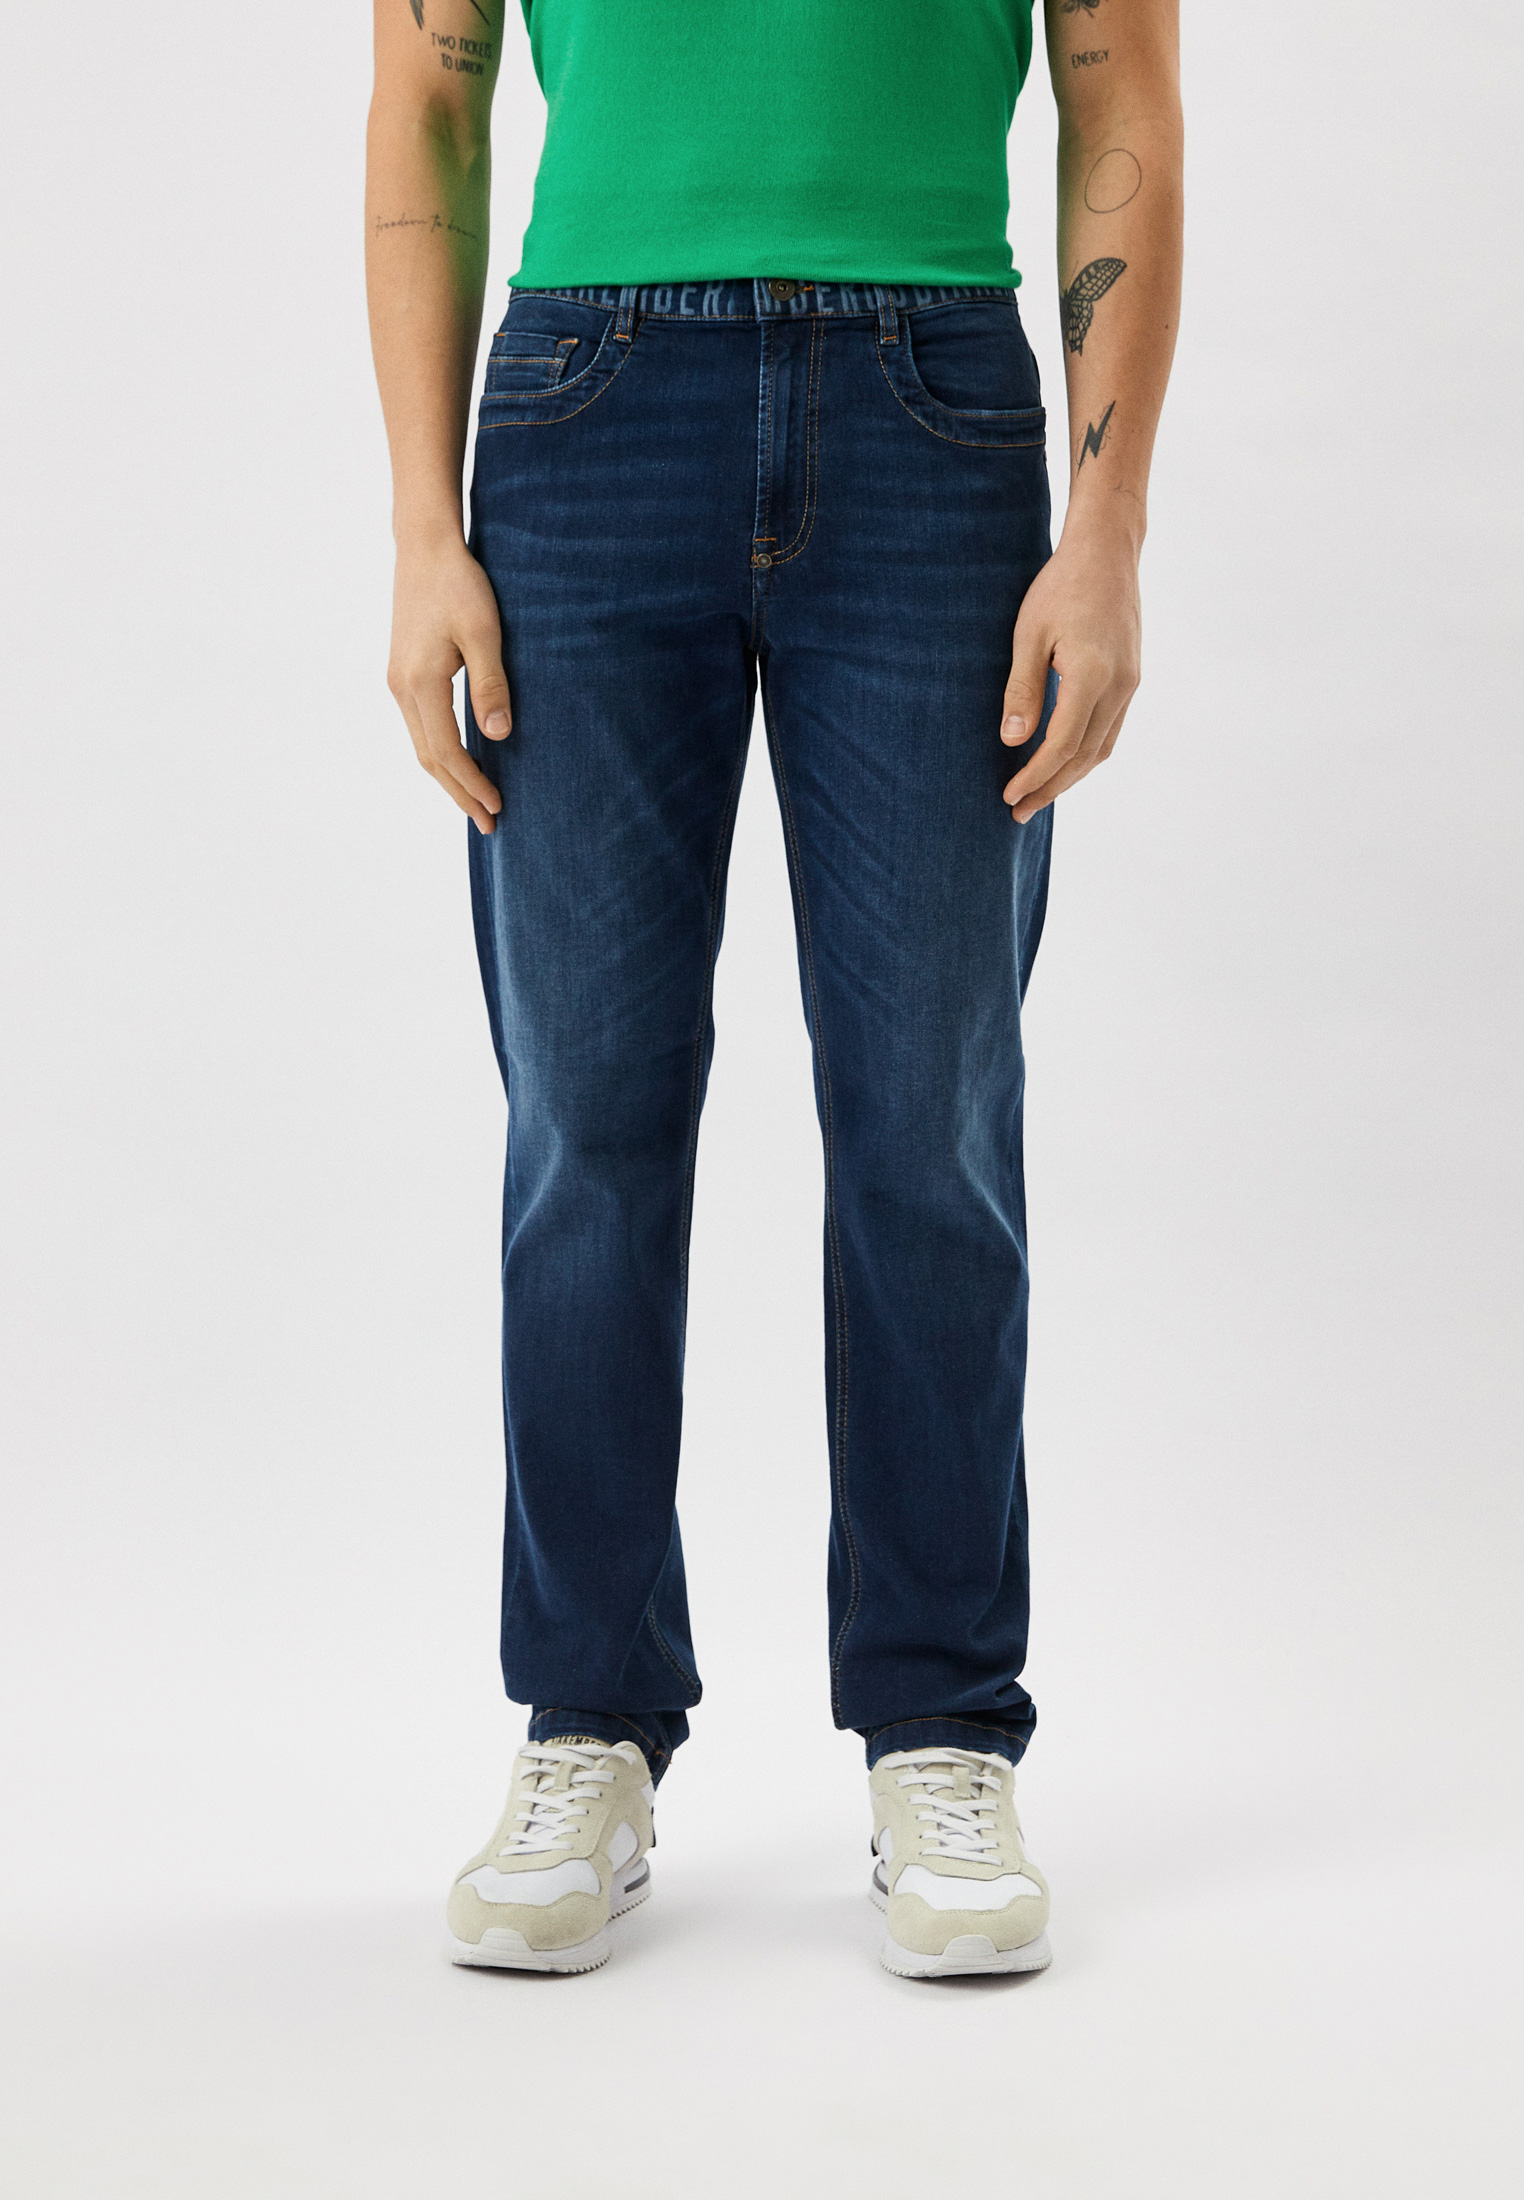 Мужские прямые джинсы Bikkembergs (Биккембергс) CQ10272S3511: изображение 5